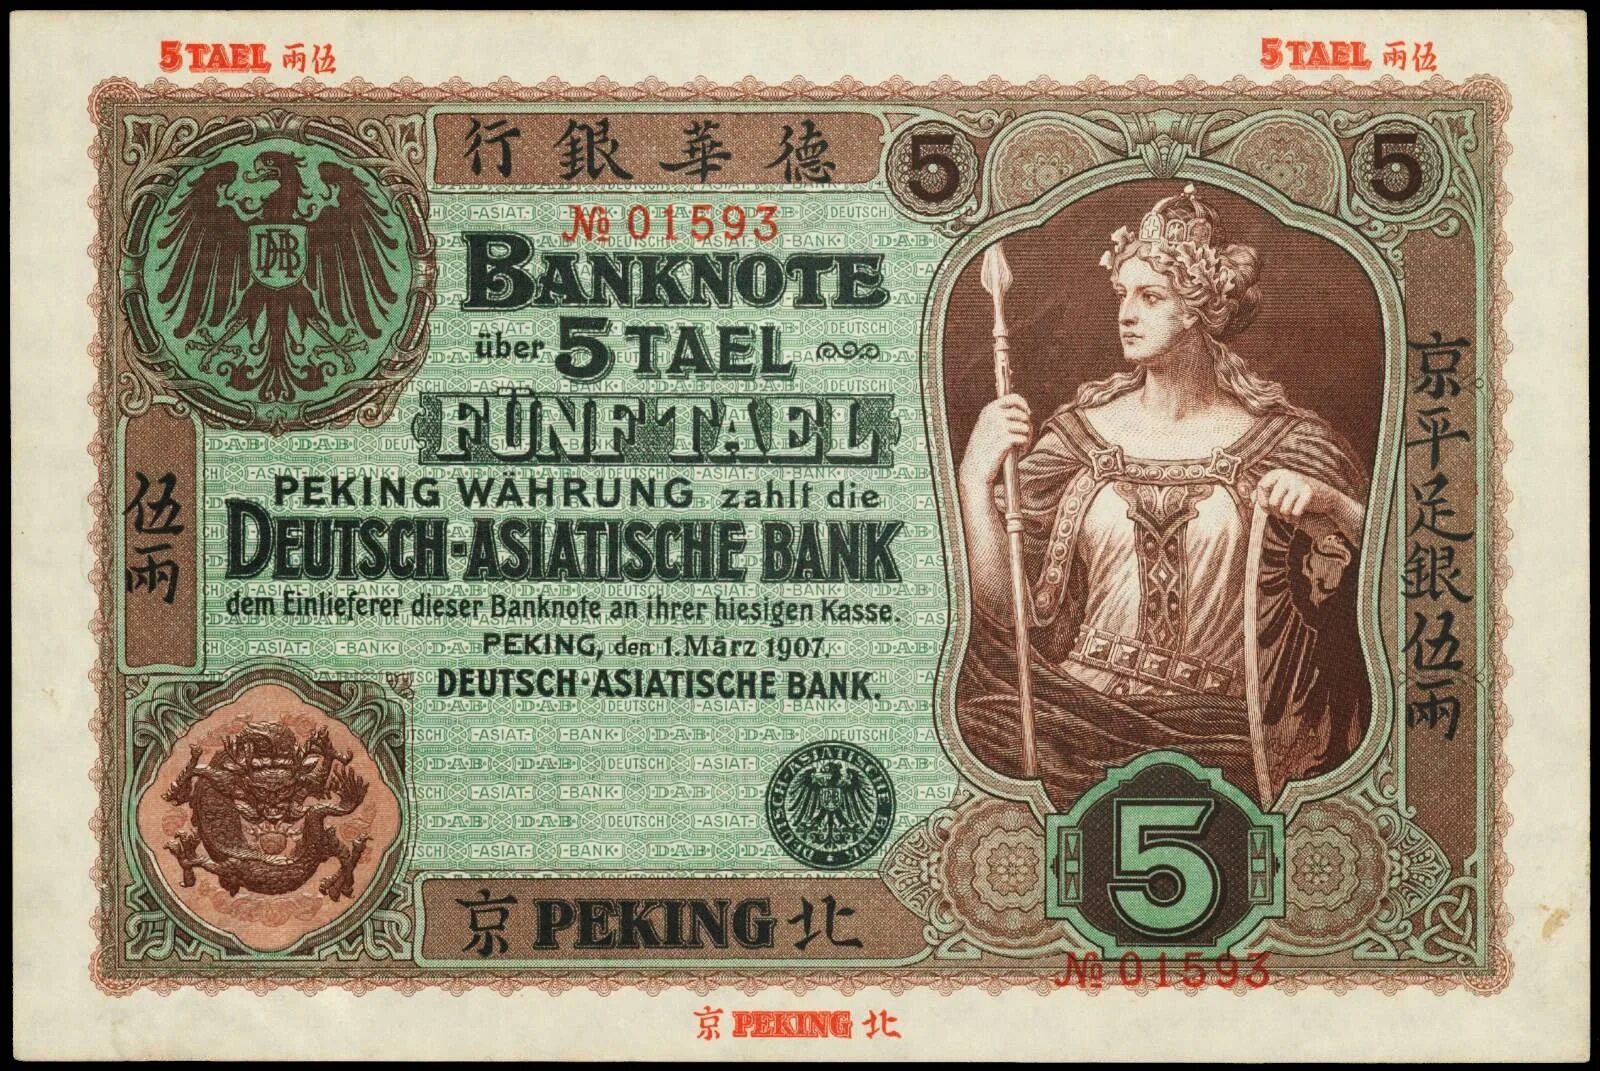 T me bank notes. Германско азиатский банк. Доллар 1907 года. Немецкие старых купюр. 10 Долларов 1907 банкнота.